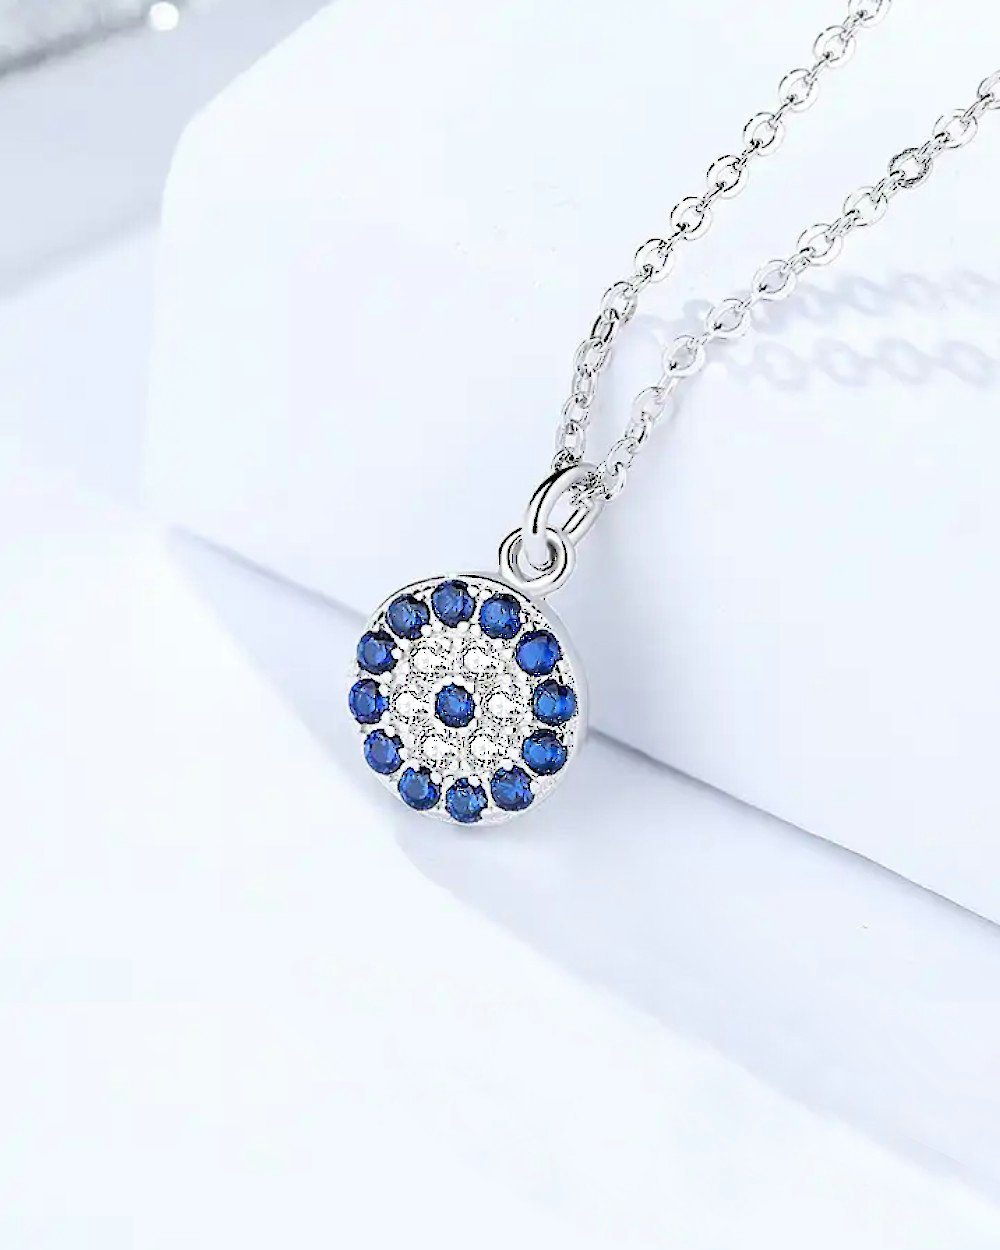 Silber filigrane Nazar Silberkette mit Halskette DANIEL 45cm (inkl. 'Nila' Nazaranhänger 925 Kette Damen Anhänger Auge dünne Auge blaues CLIFFORD Verpackung), Anhänger